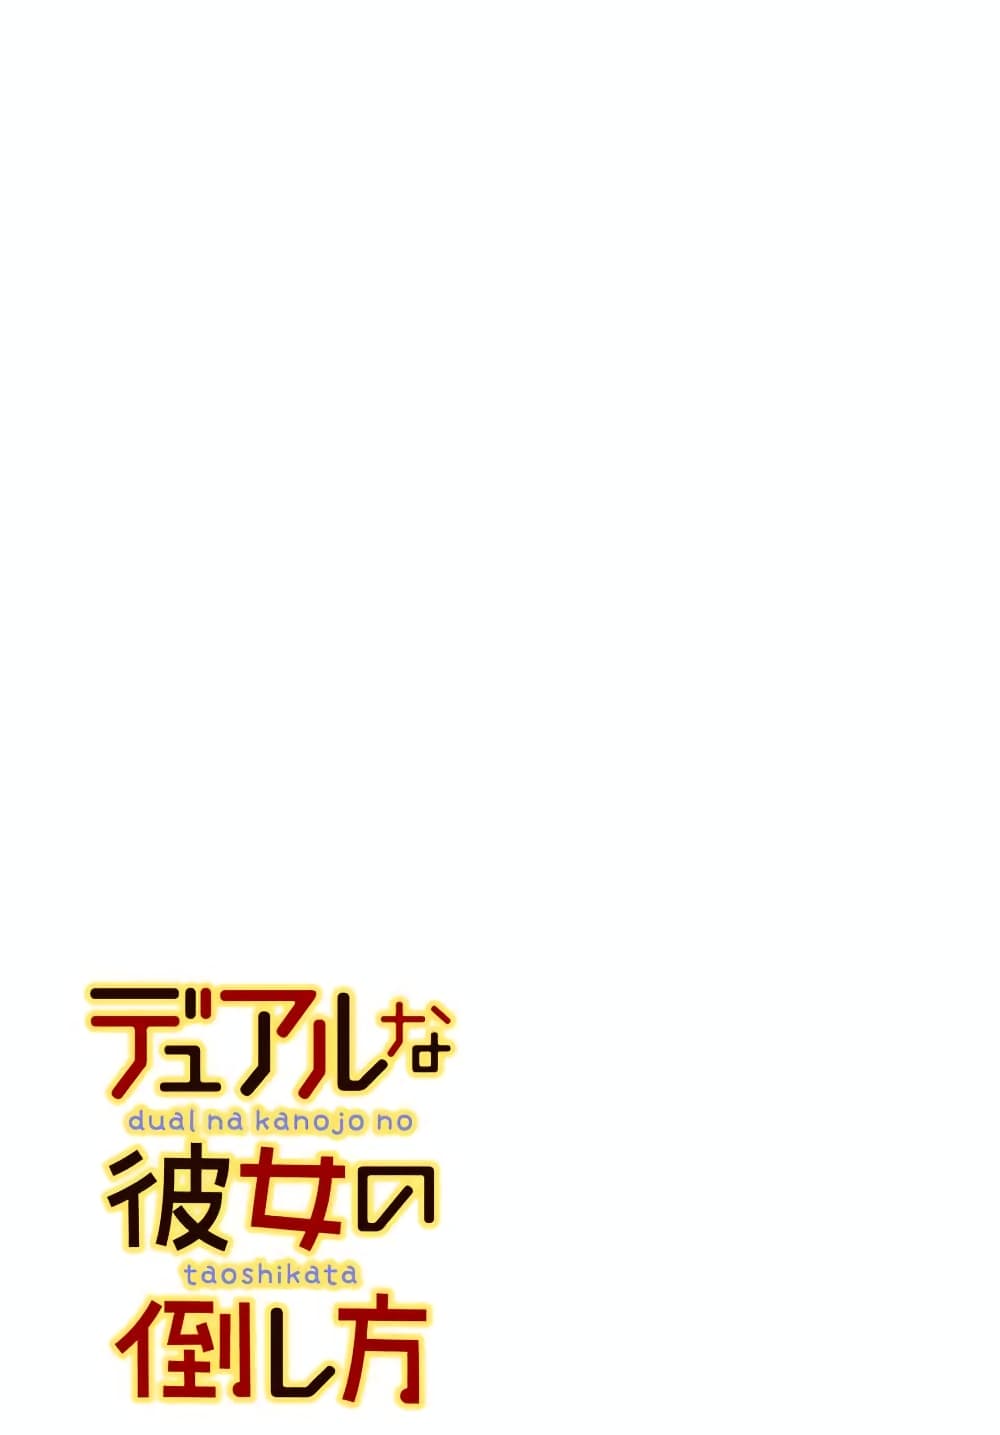 อ่านการ์ตูน Dual Na Kanojo No Taoshikata 2.2 ภาพที่ 1